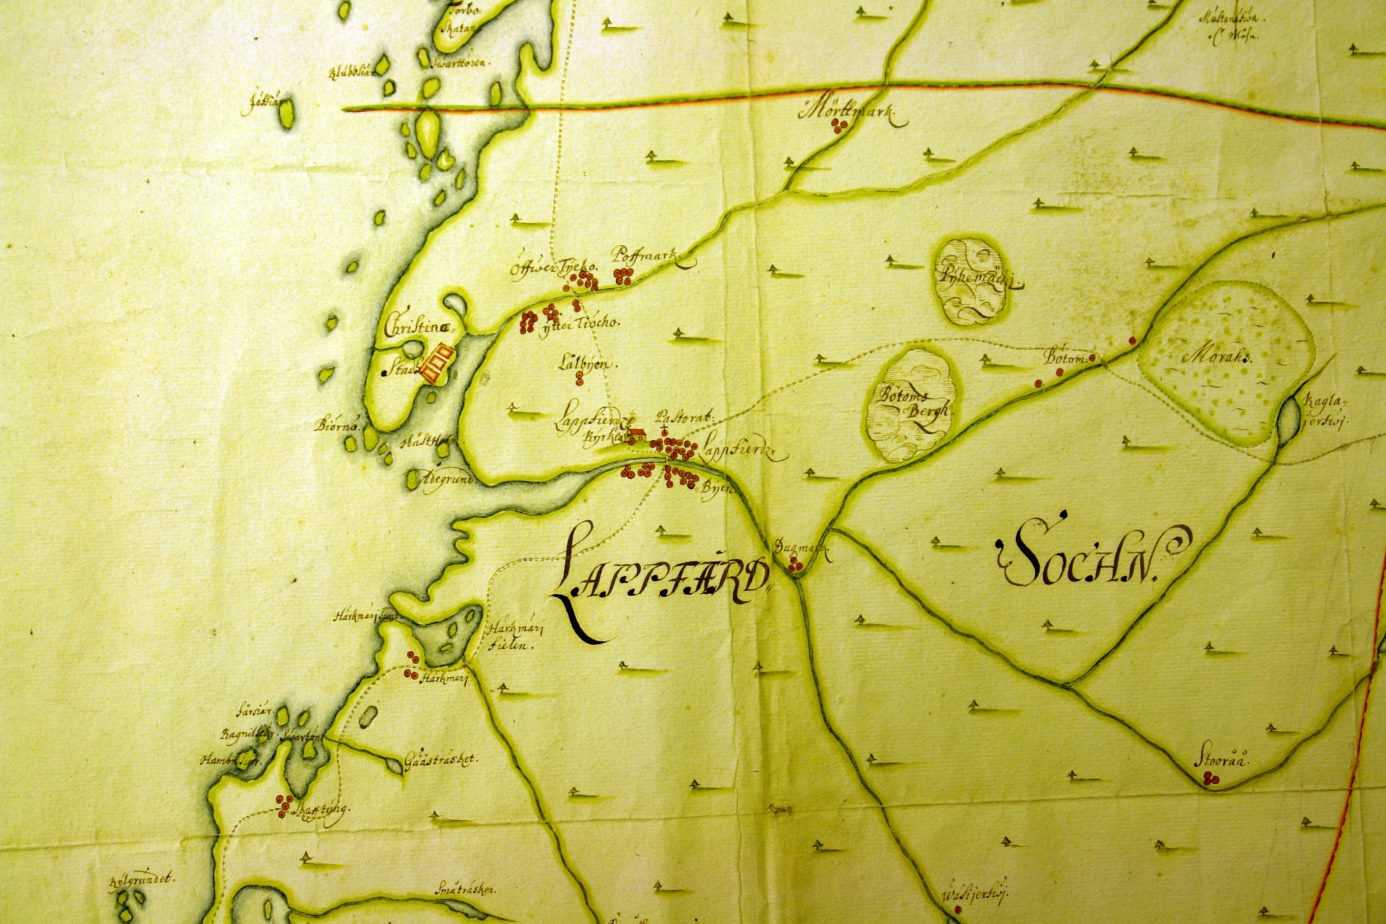 På denna karta från slutet av 1600-talet så ser man att det i Skaftung fanns 4 hemman, likaså i Härkmeri. I Lappfjärd fanns det närmare 30 hemman medan det i Dagsmark fanns endast 3. 